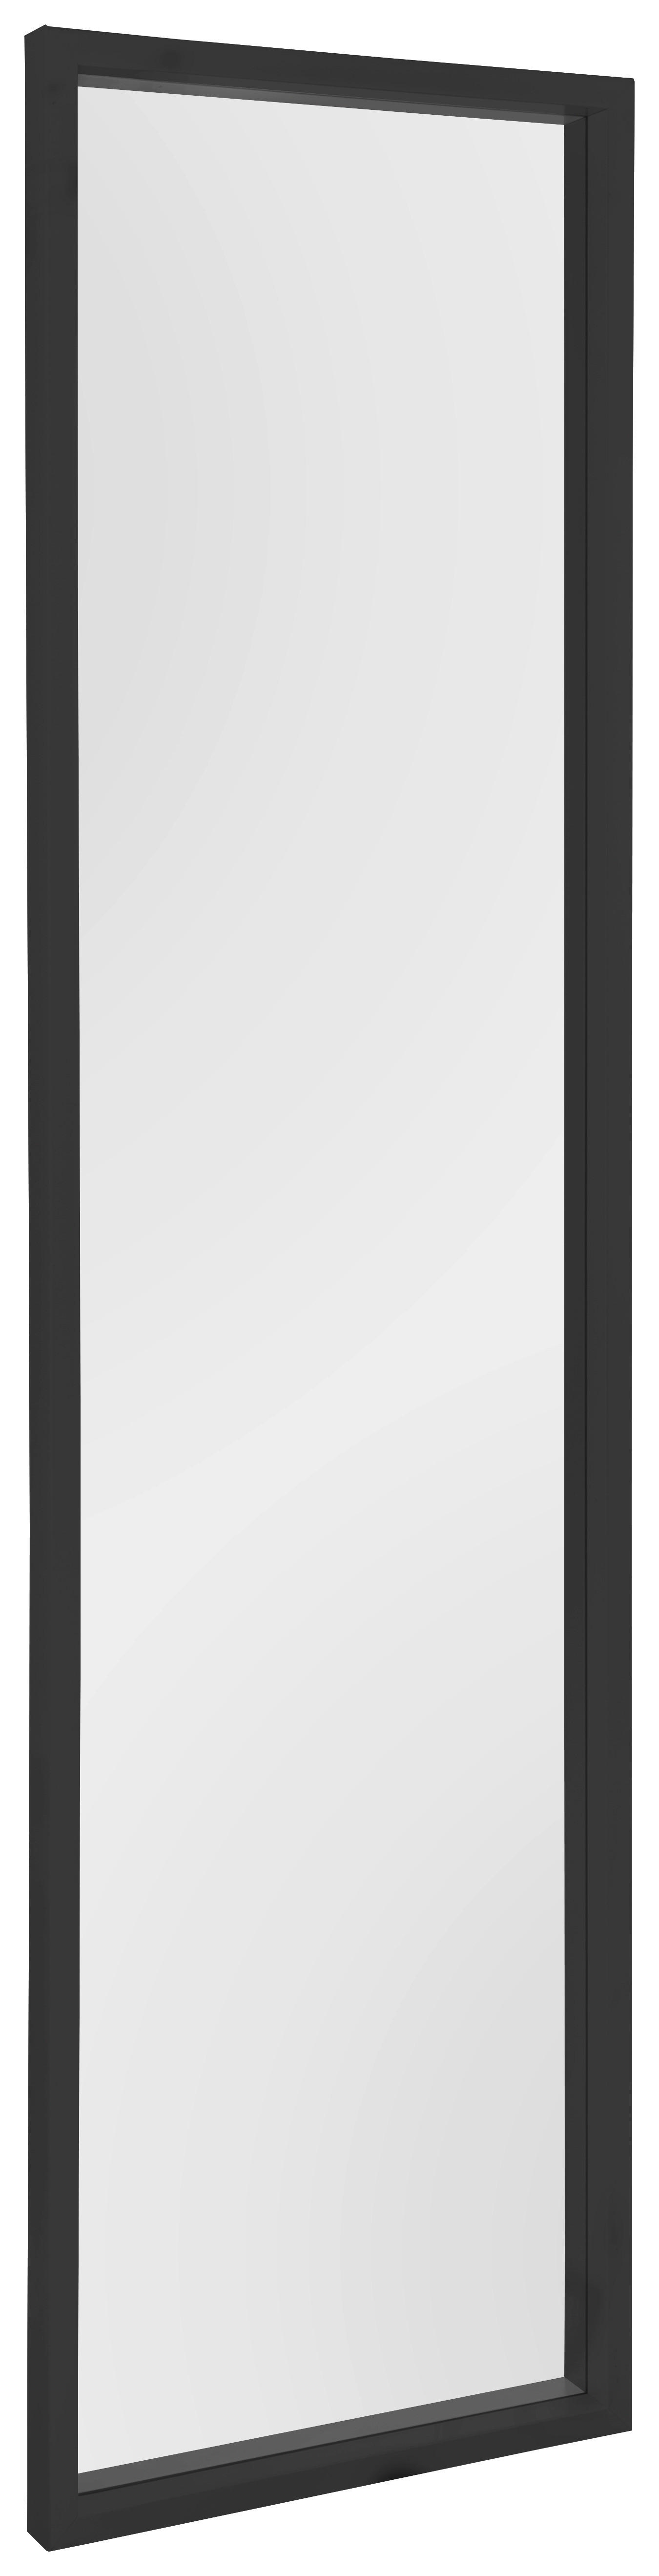 Rahmenspiegel Alea schwarz B/H: ca. 32x124 cm Alea - schwarz (32,00/124,00cm)